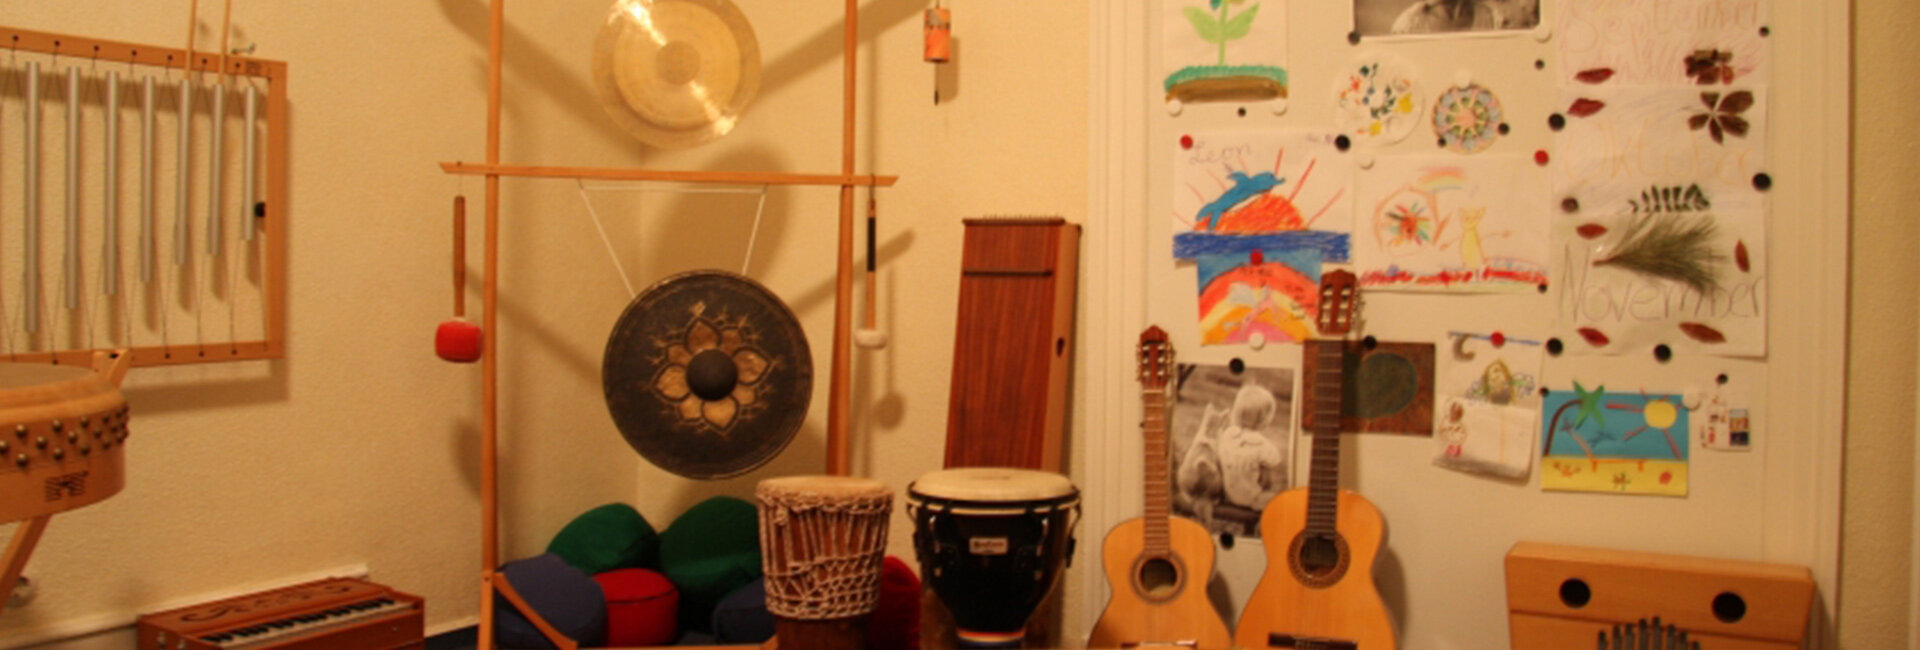 Zimmer mit Musikinstrumenten